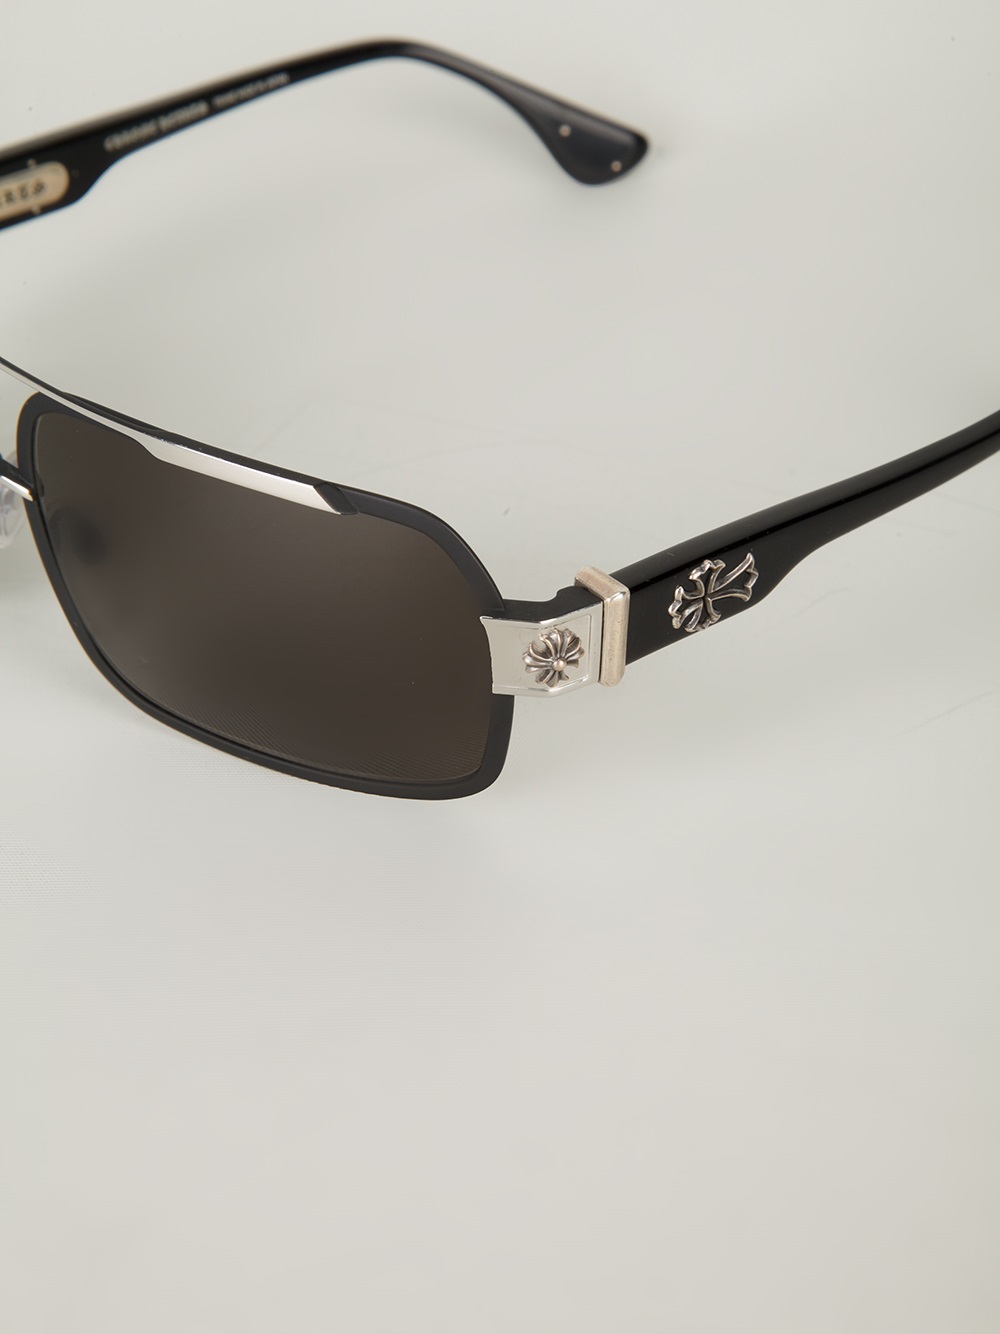 Chrome Hearts Hummer Sunglasses in Black for Men - Lyst